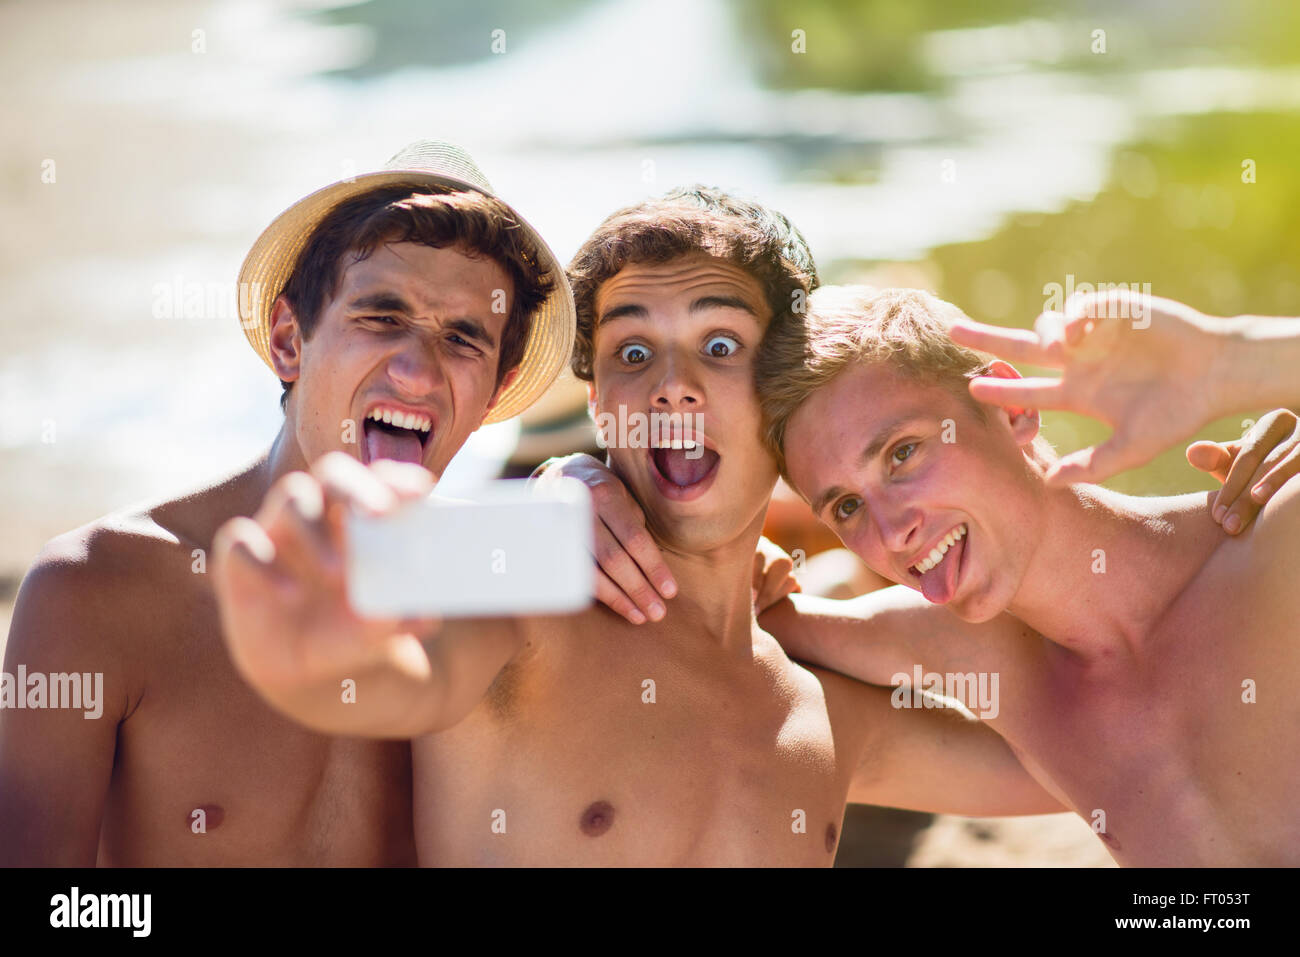 Männer selfie junge Selfie. 